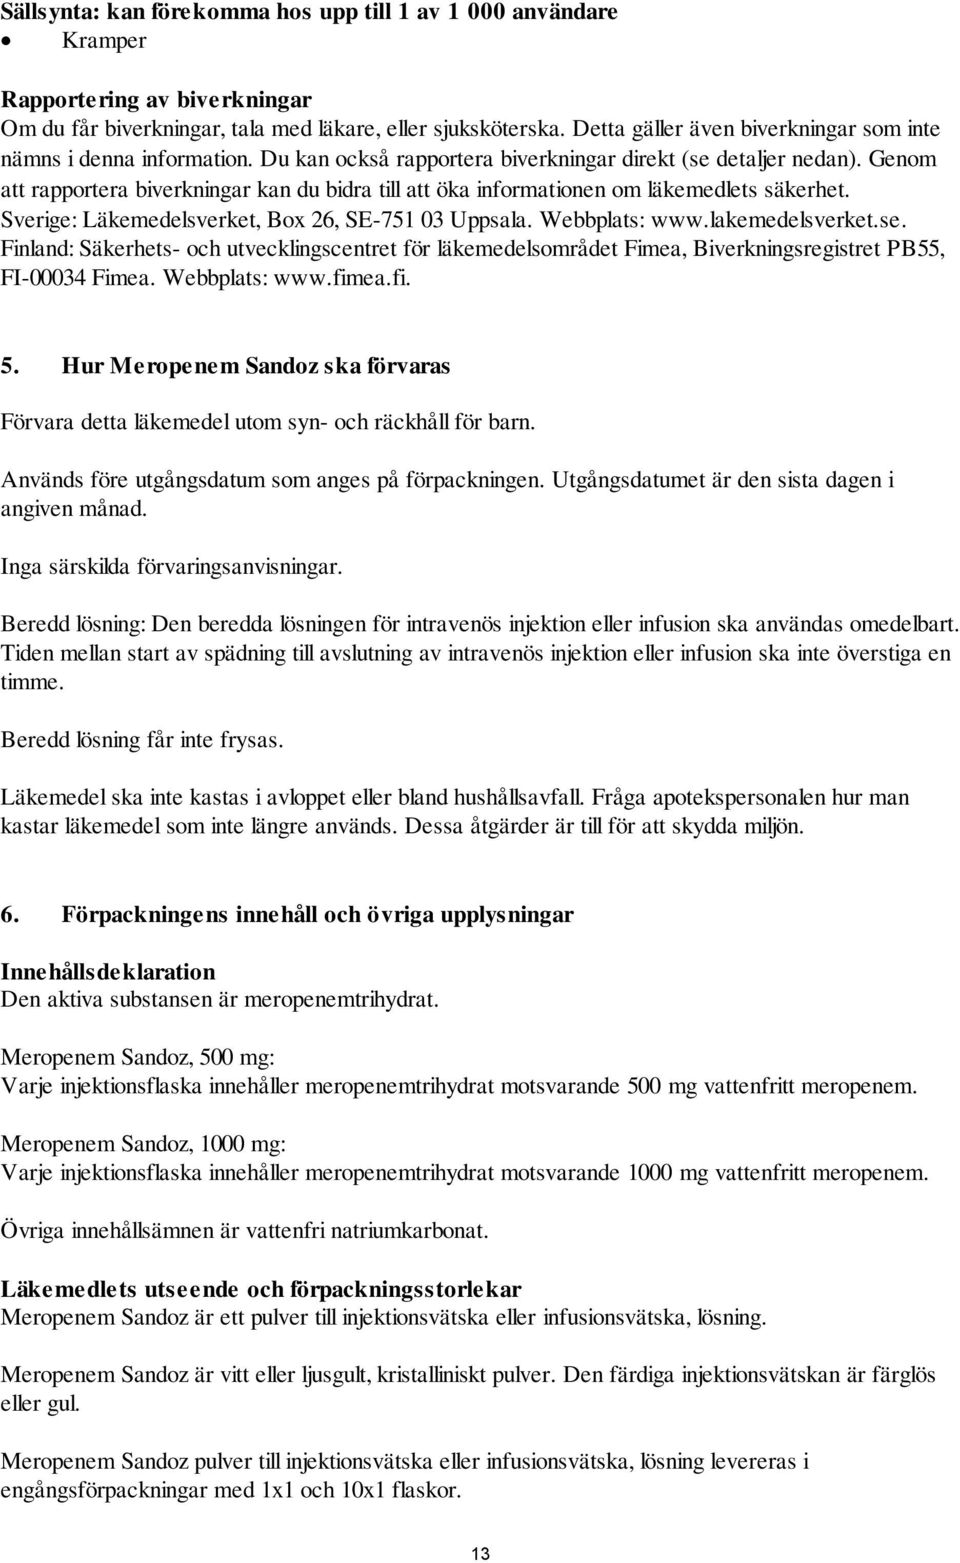 Genom att rapportera biverkningar kan du bidra till att öka informationen om läkemedlets säkerhet. Sverige: Läkemedelsverket, Box 26, SE-751 03 Uppsala. Webbplats: www.lakemedelsverket.se.